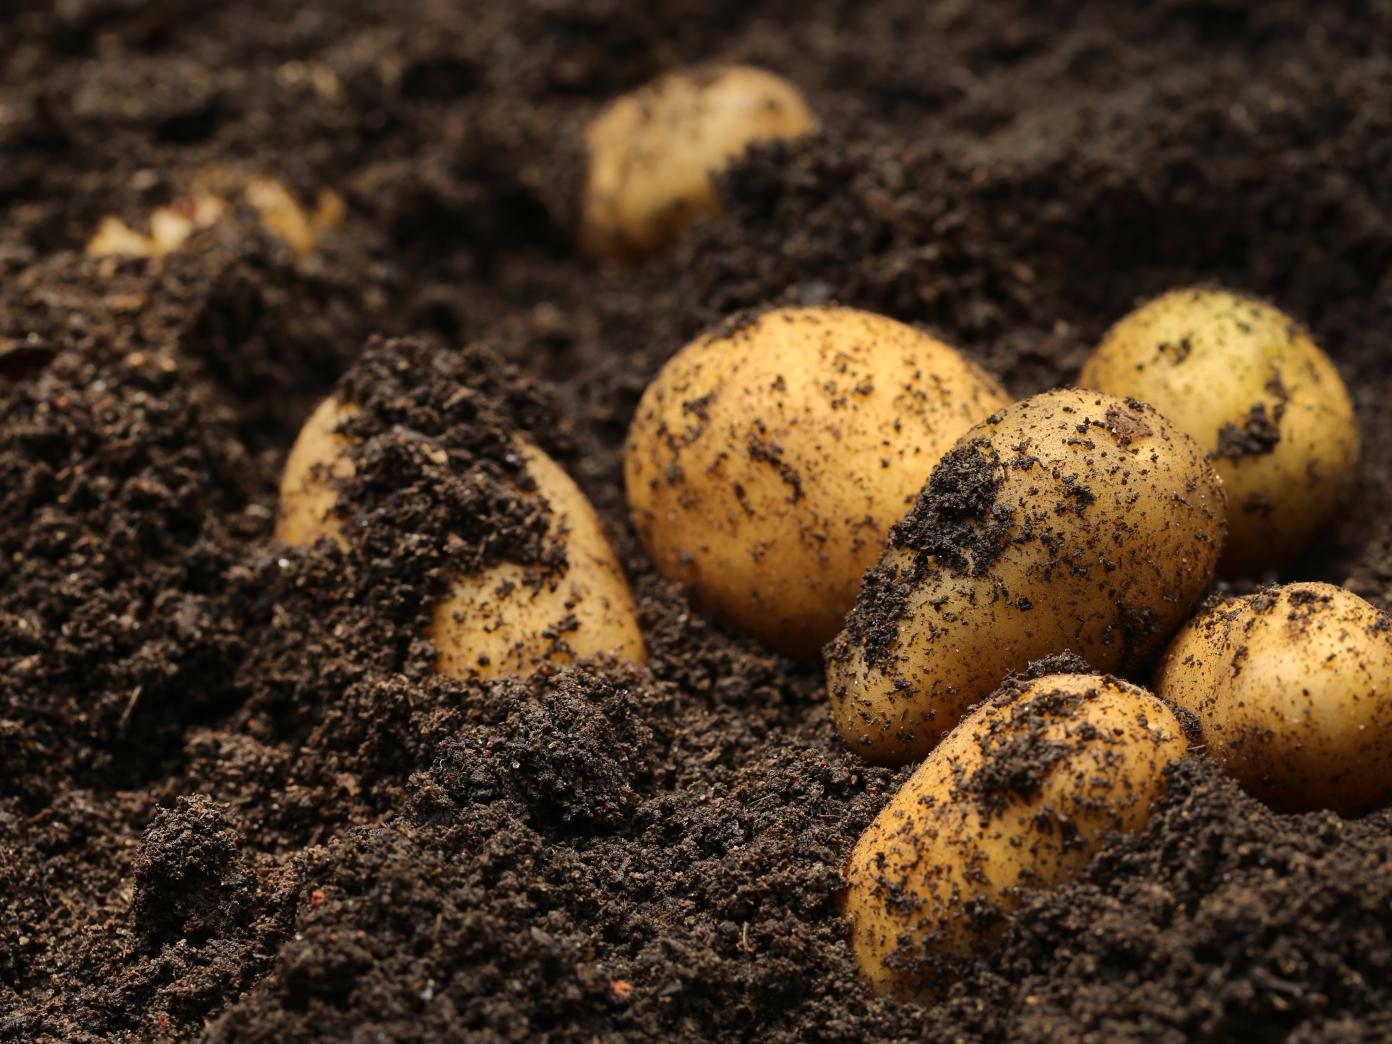 Nærbillede af opgravede kartofler i muldjord.